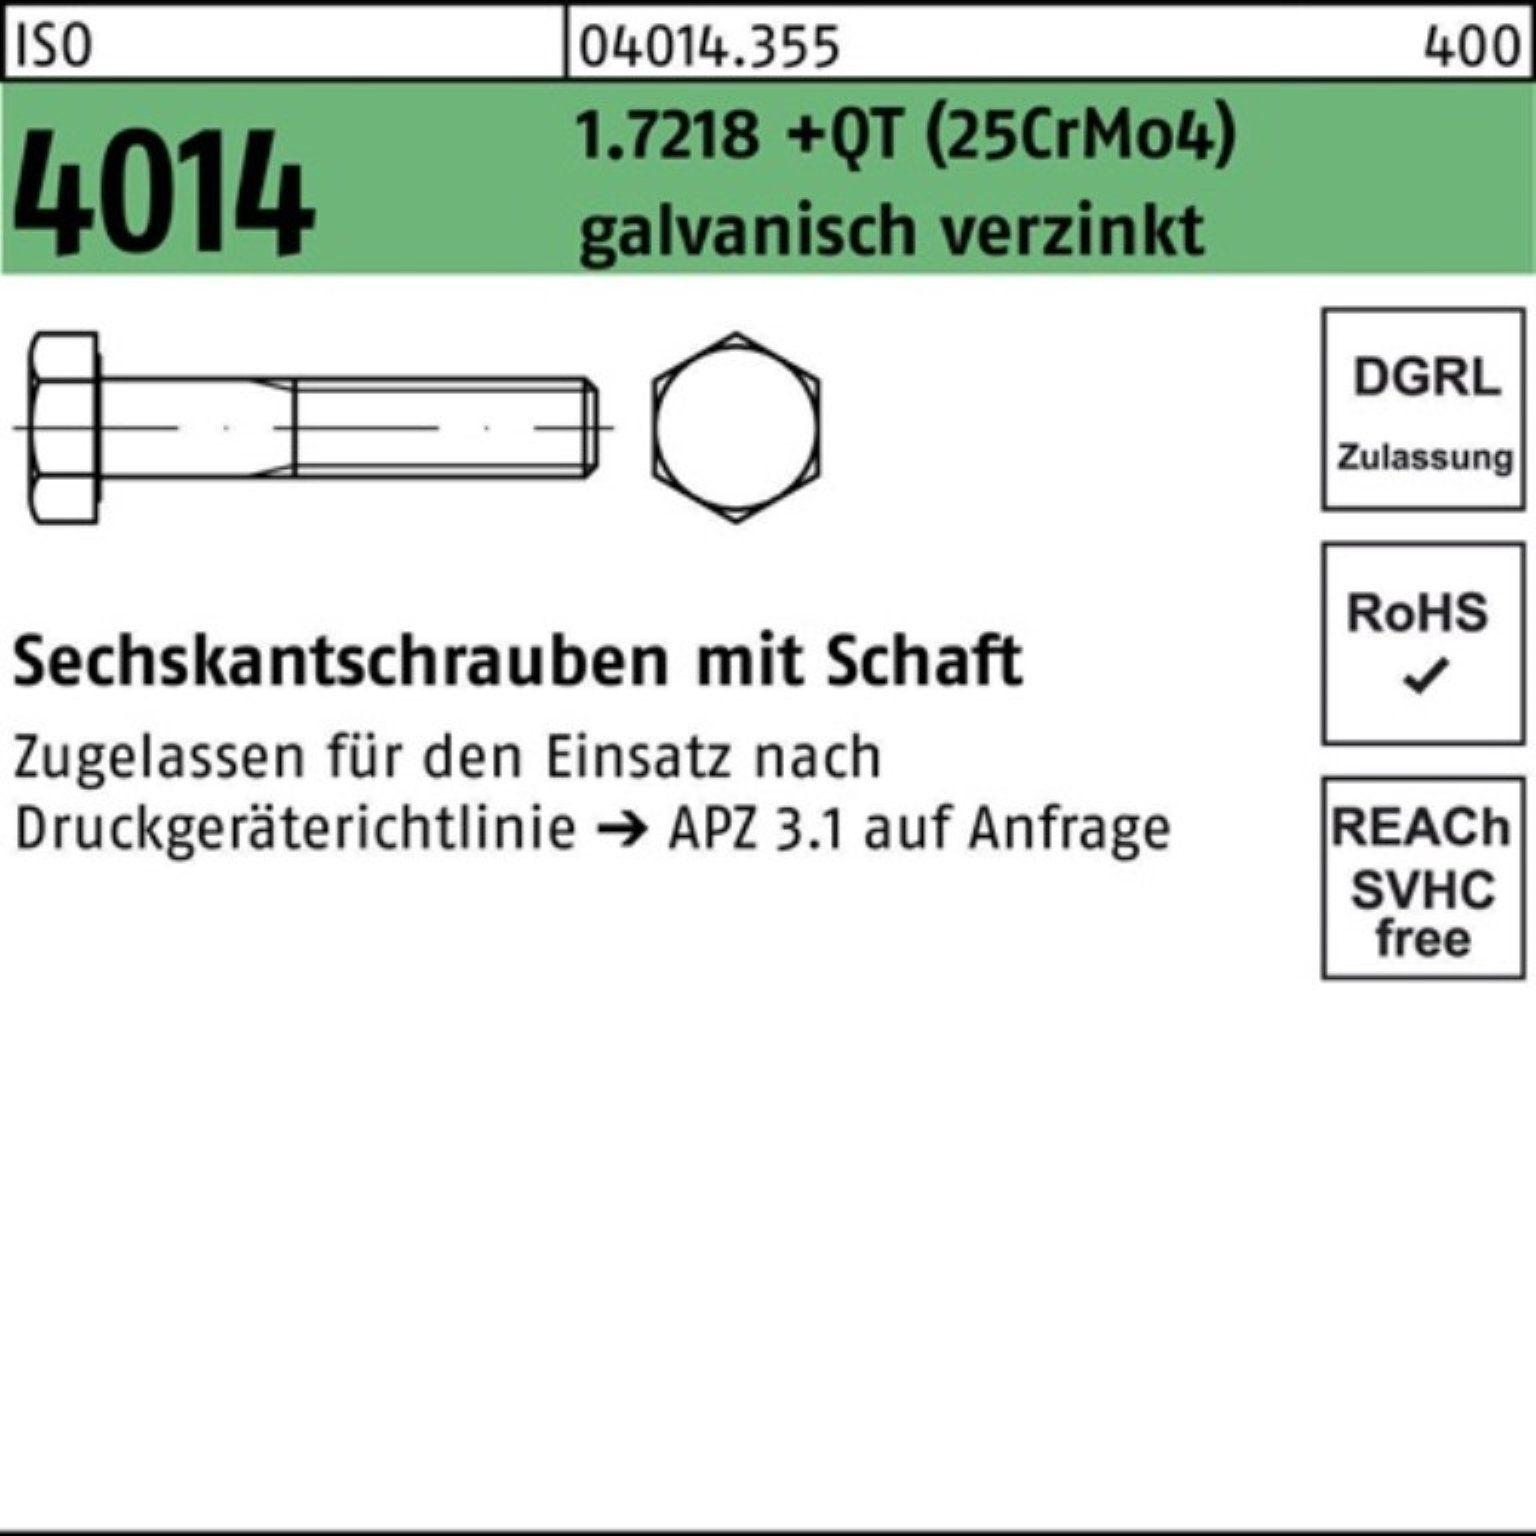 1.7218 Sechskantschraube Pack 4014 Schaft Sechskantschraube M20x180 +QT ISO Bufab 100er (25CrM